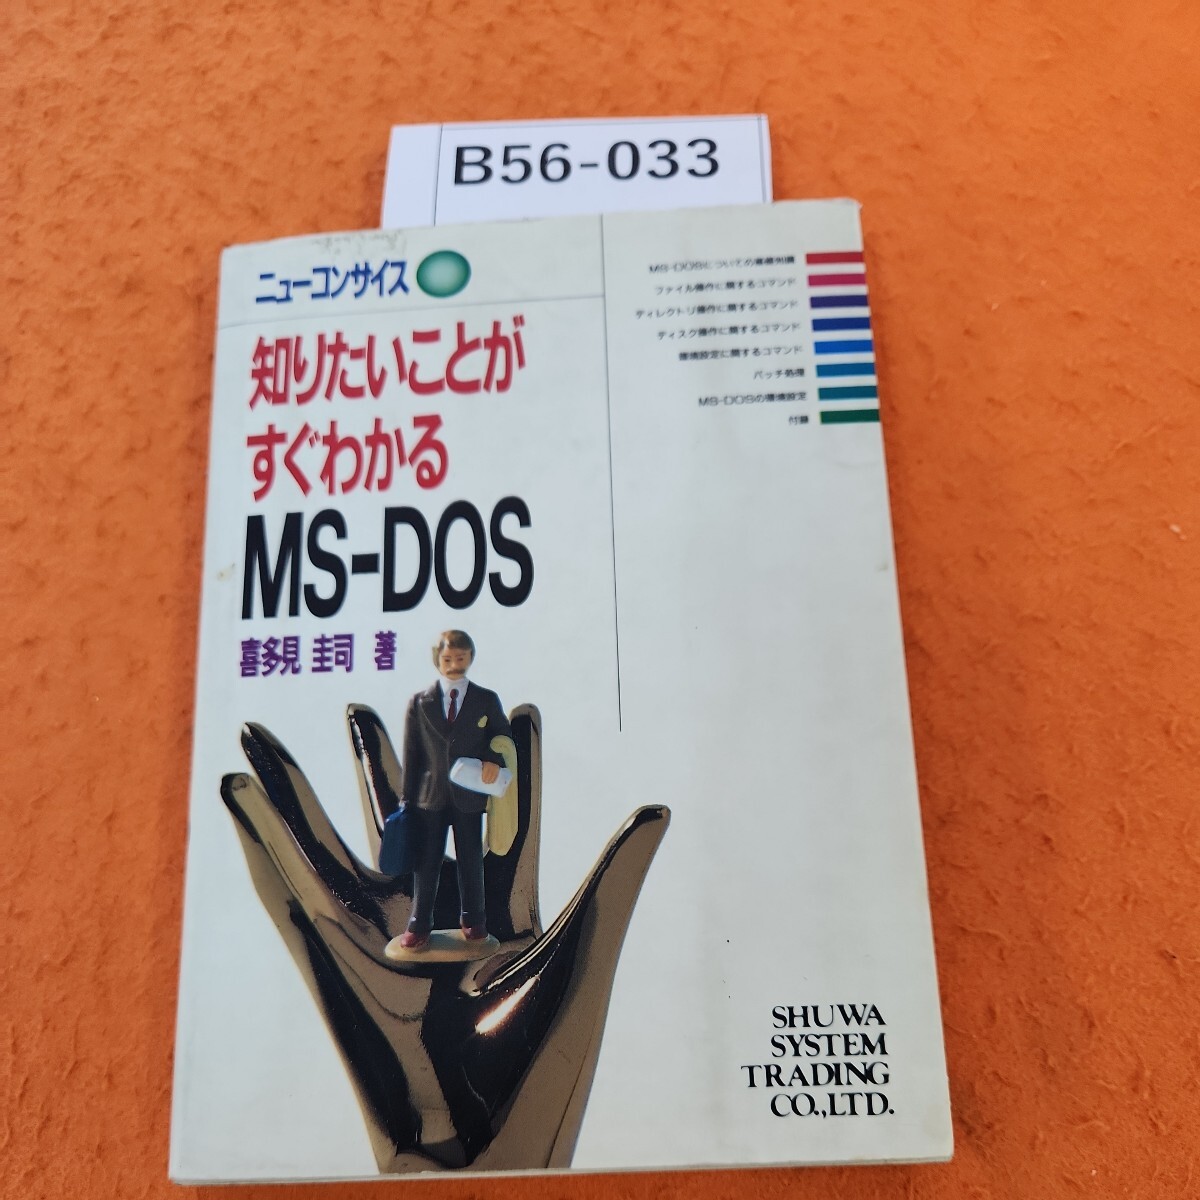 B56-033 новый темно синий sa стул хочет знать ... сразу понимать MS-DOS